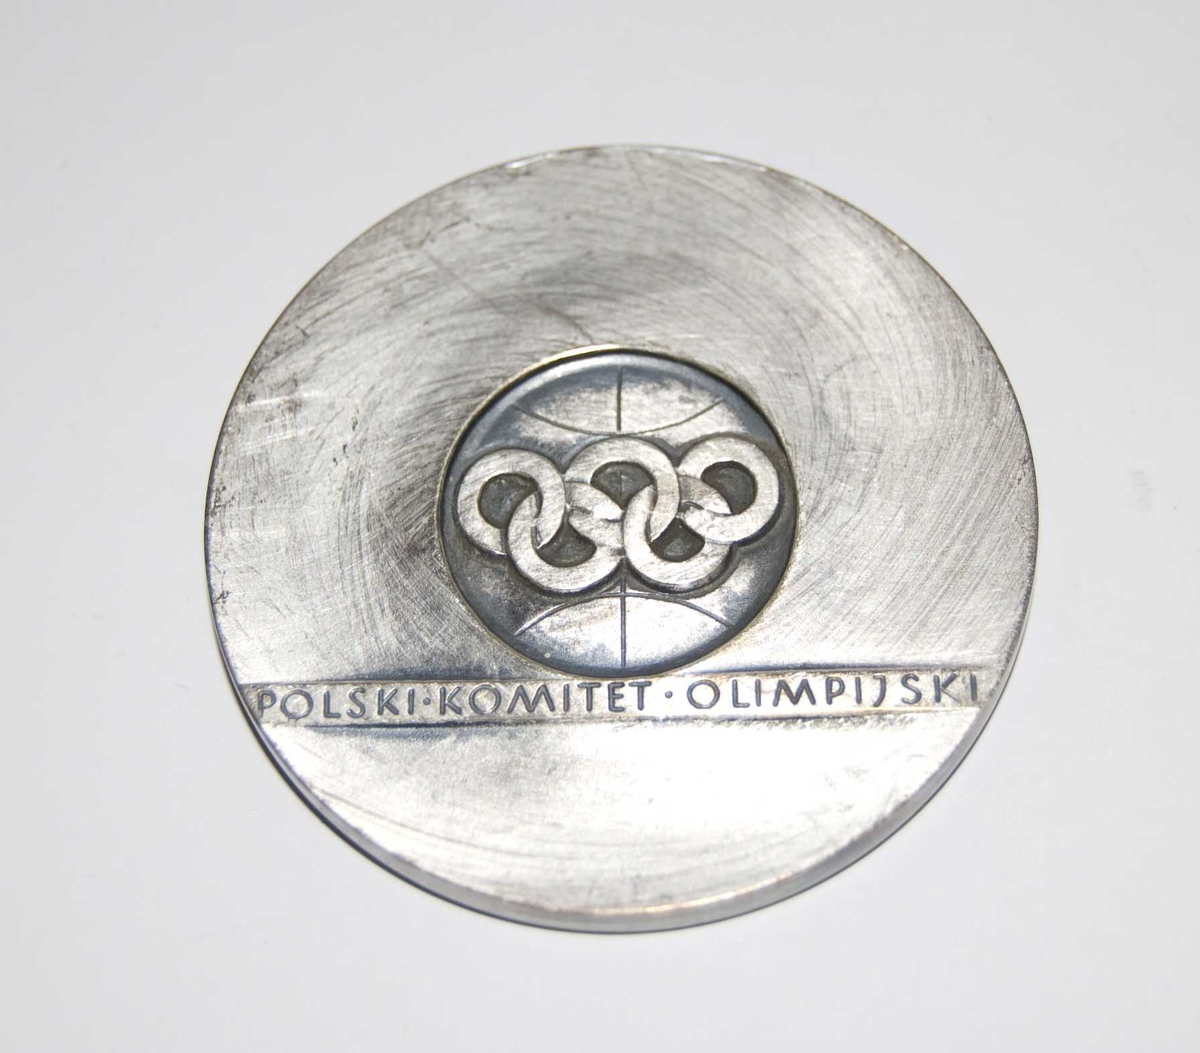 Sølvfarget medalje med motiv av de olympiske ringer og løpende atleter. Det er også et stilisert mønster/motiv på medaljen. Det følger med en rød eske til medaljen.